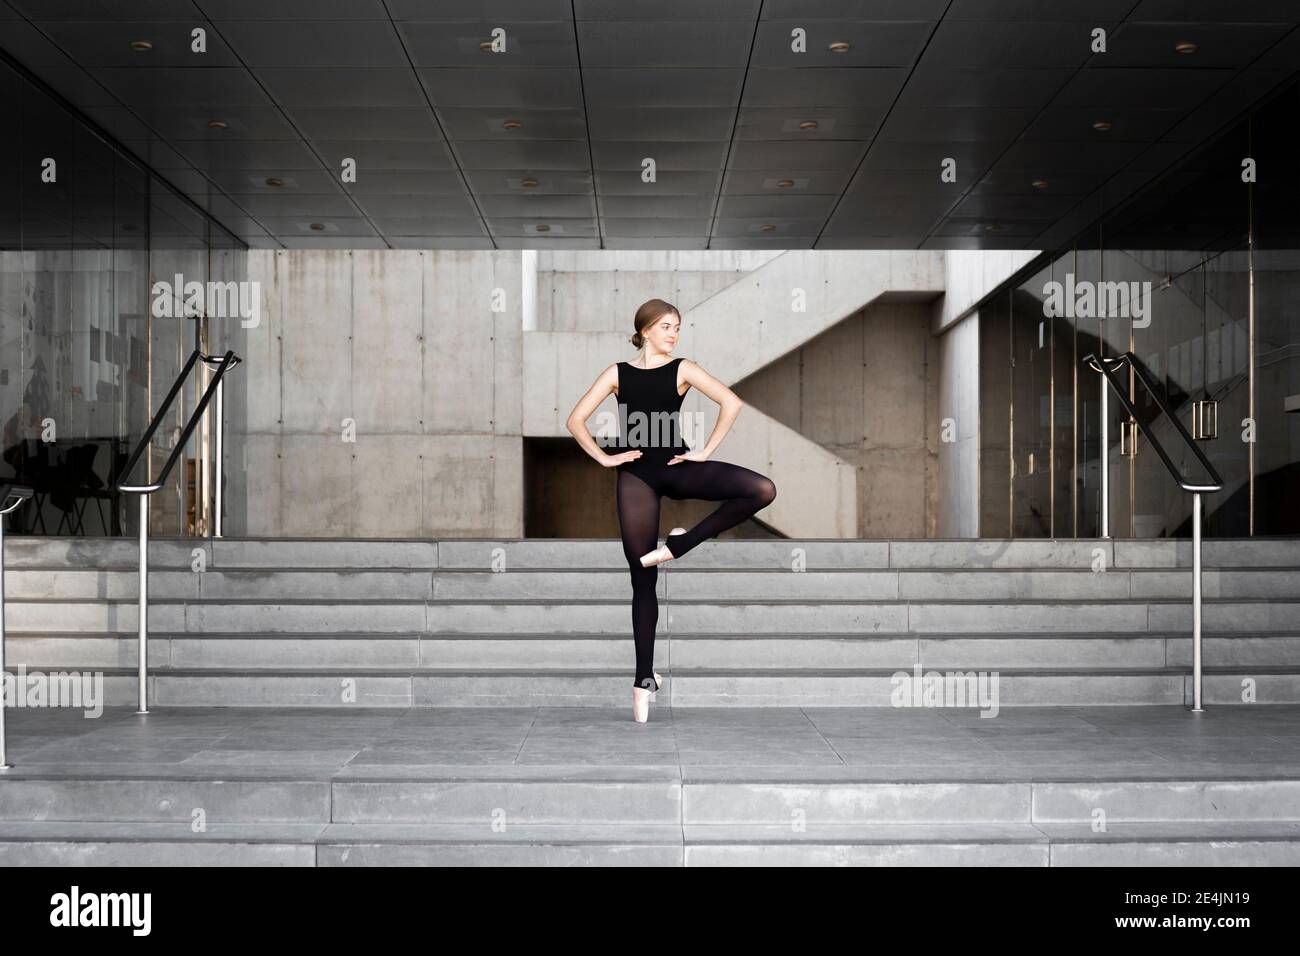 Ballerina in black leotard in modern concrete building Stock Photo